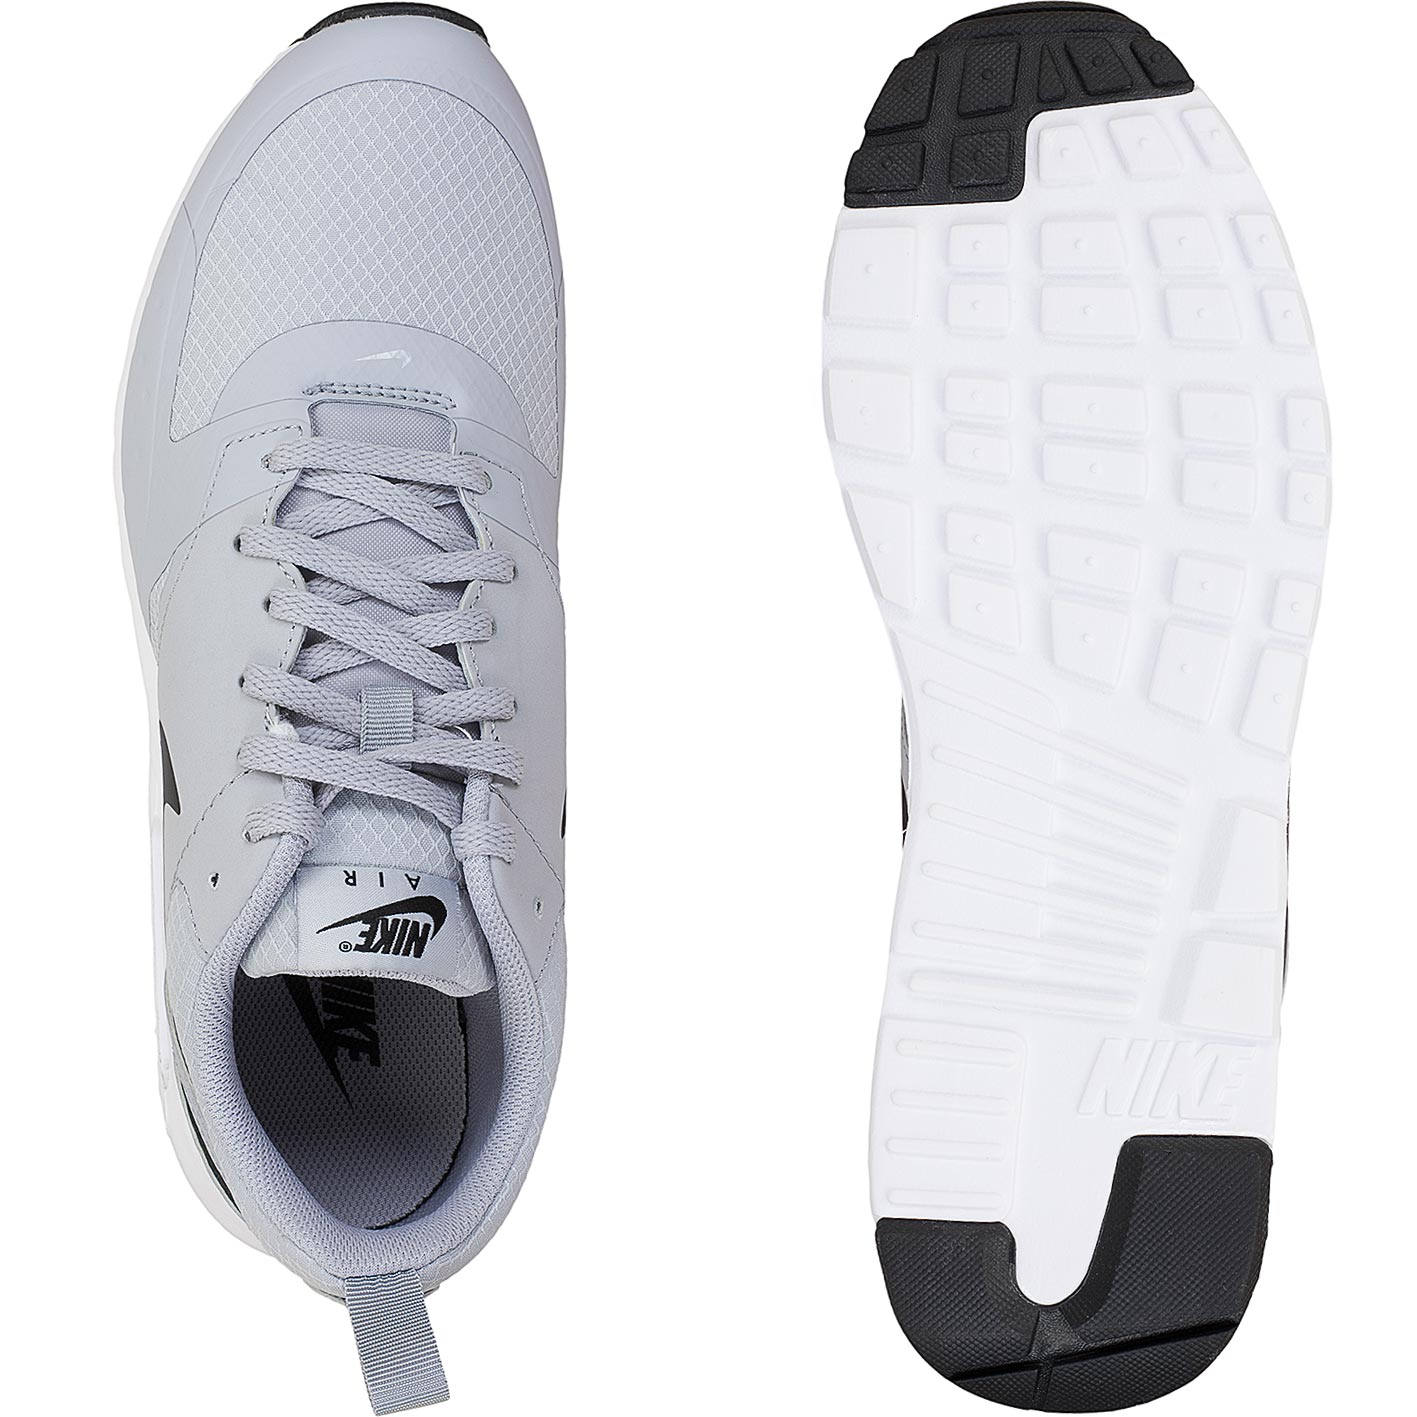 ☆ Nike Sneaker Air Max Vision SE grau/weiß - hier bestellen!